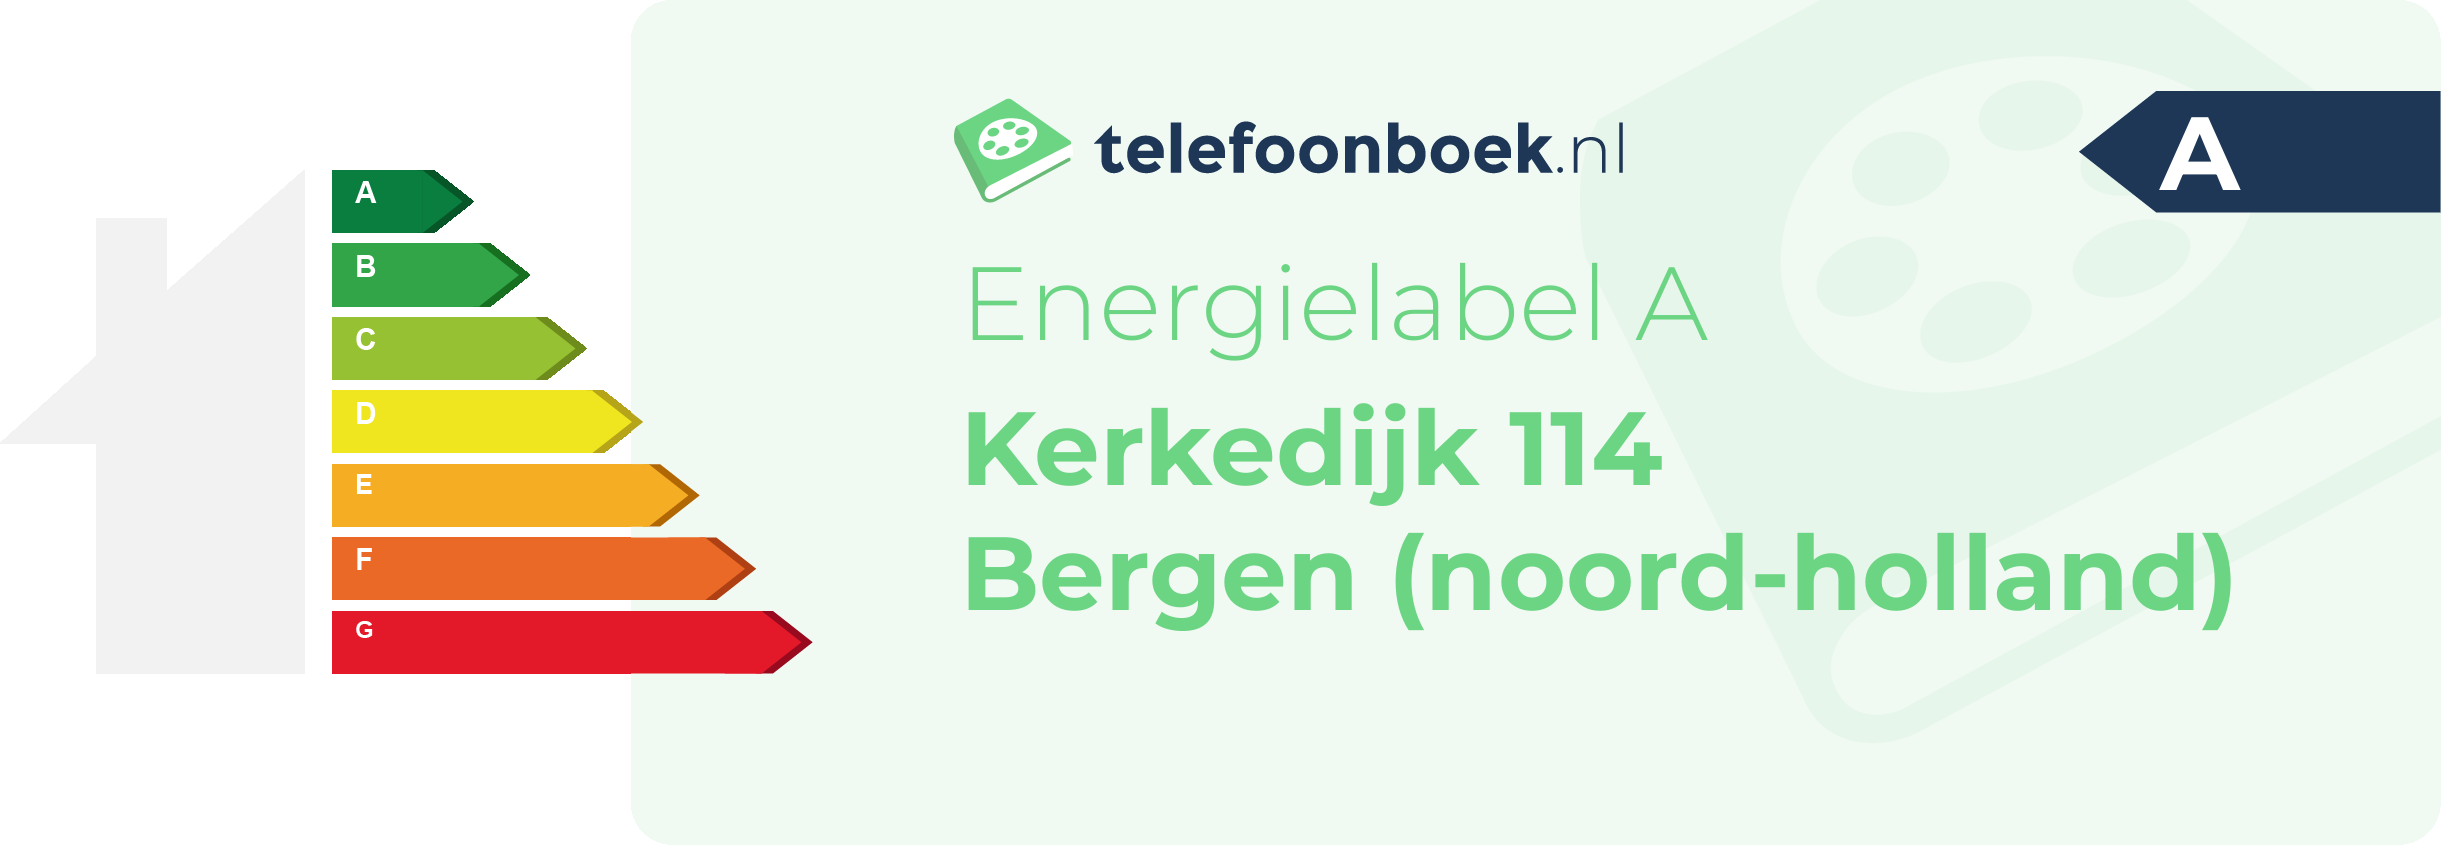 Energielabel Kerkedijk 114 Bergen (Noord-Holland)